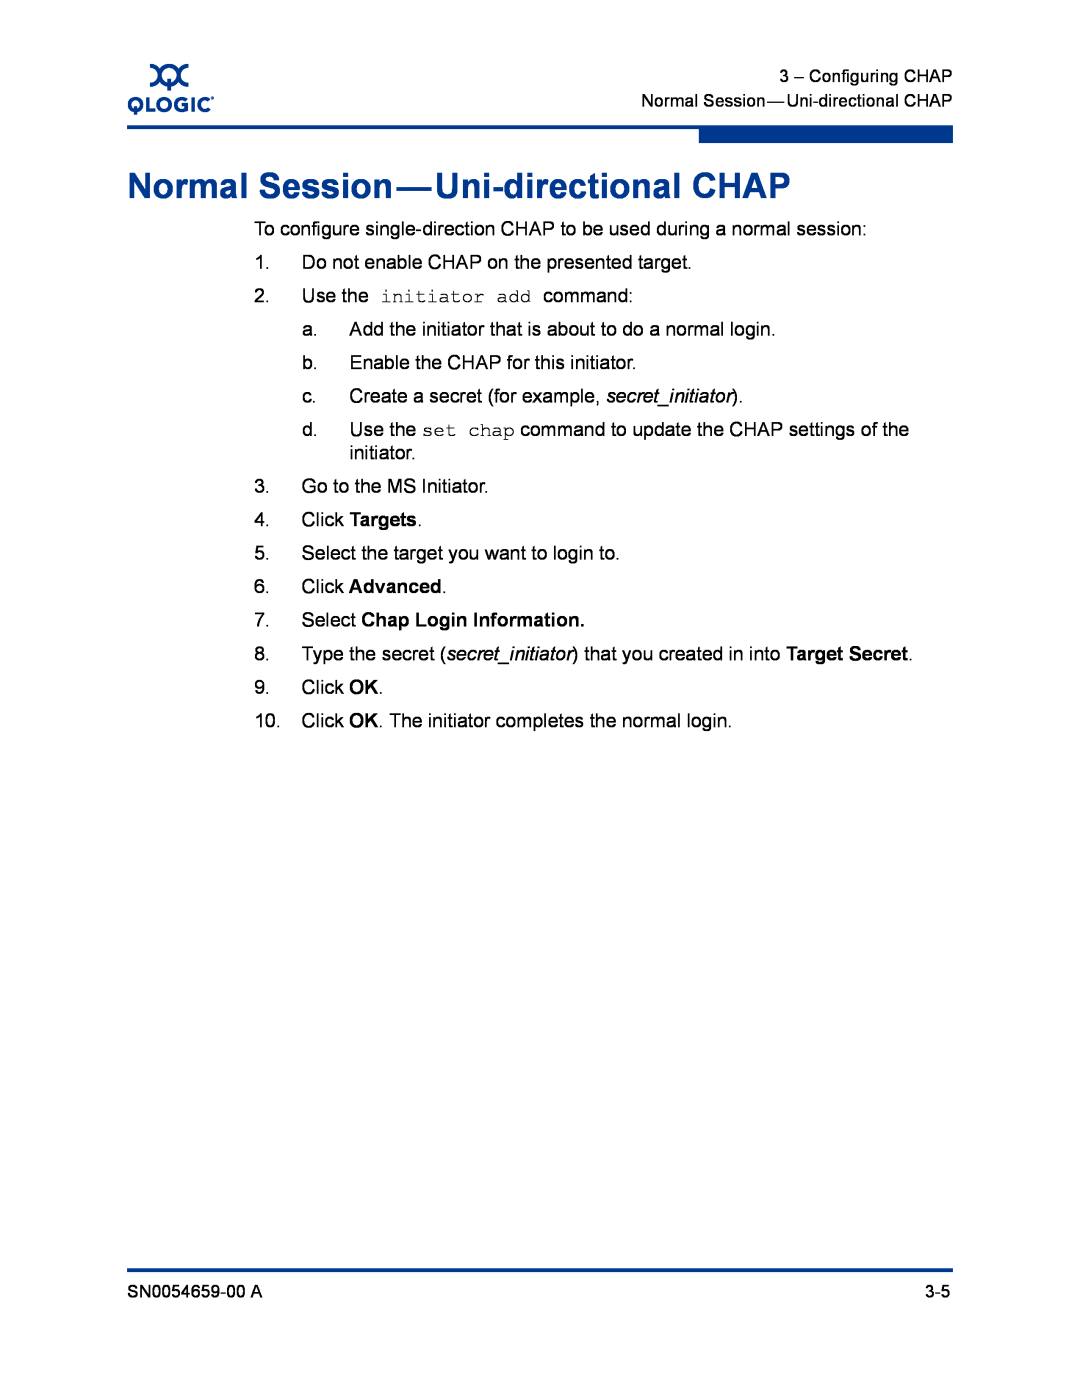 Q-Logic ISR6142 manual Normal Session-Uni-directional CHAP 